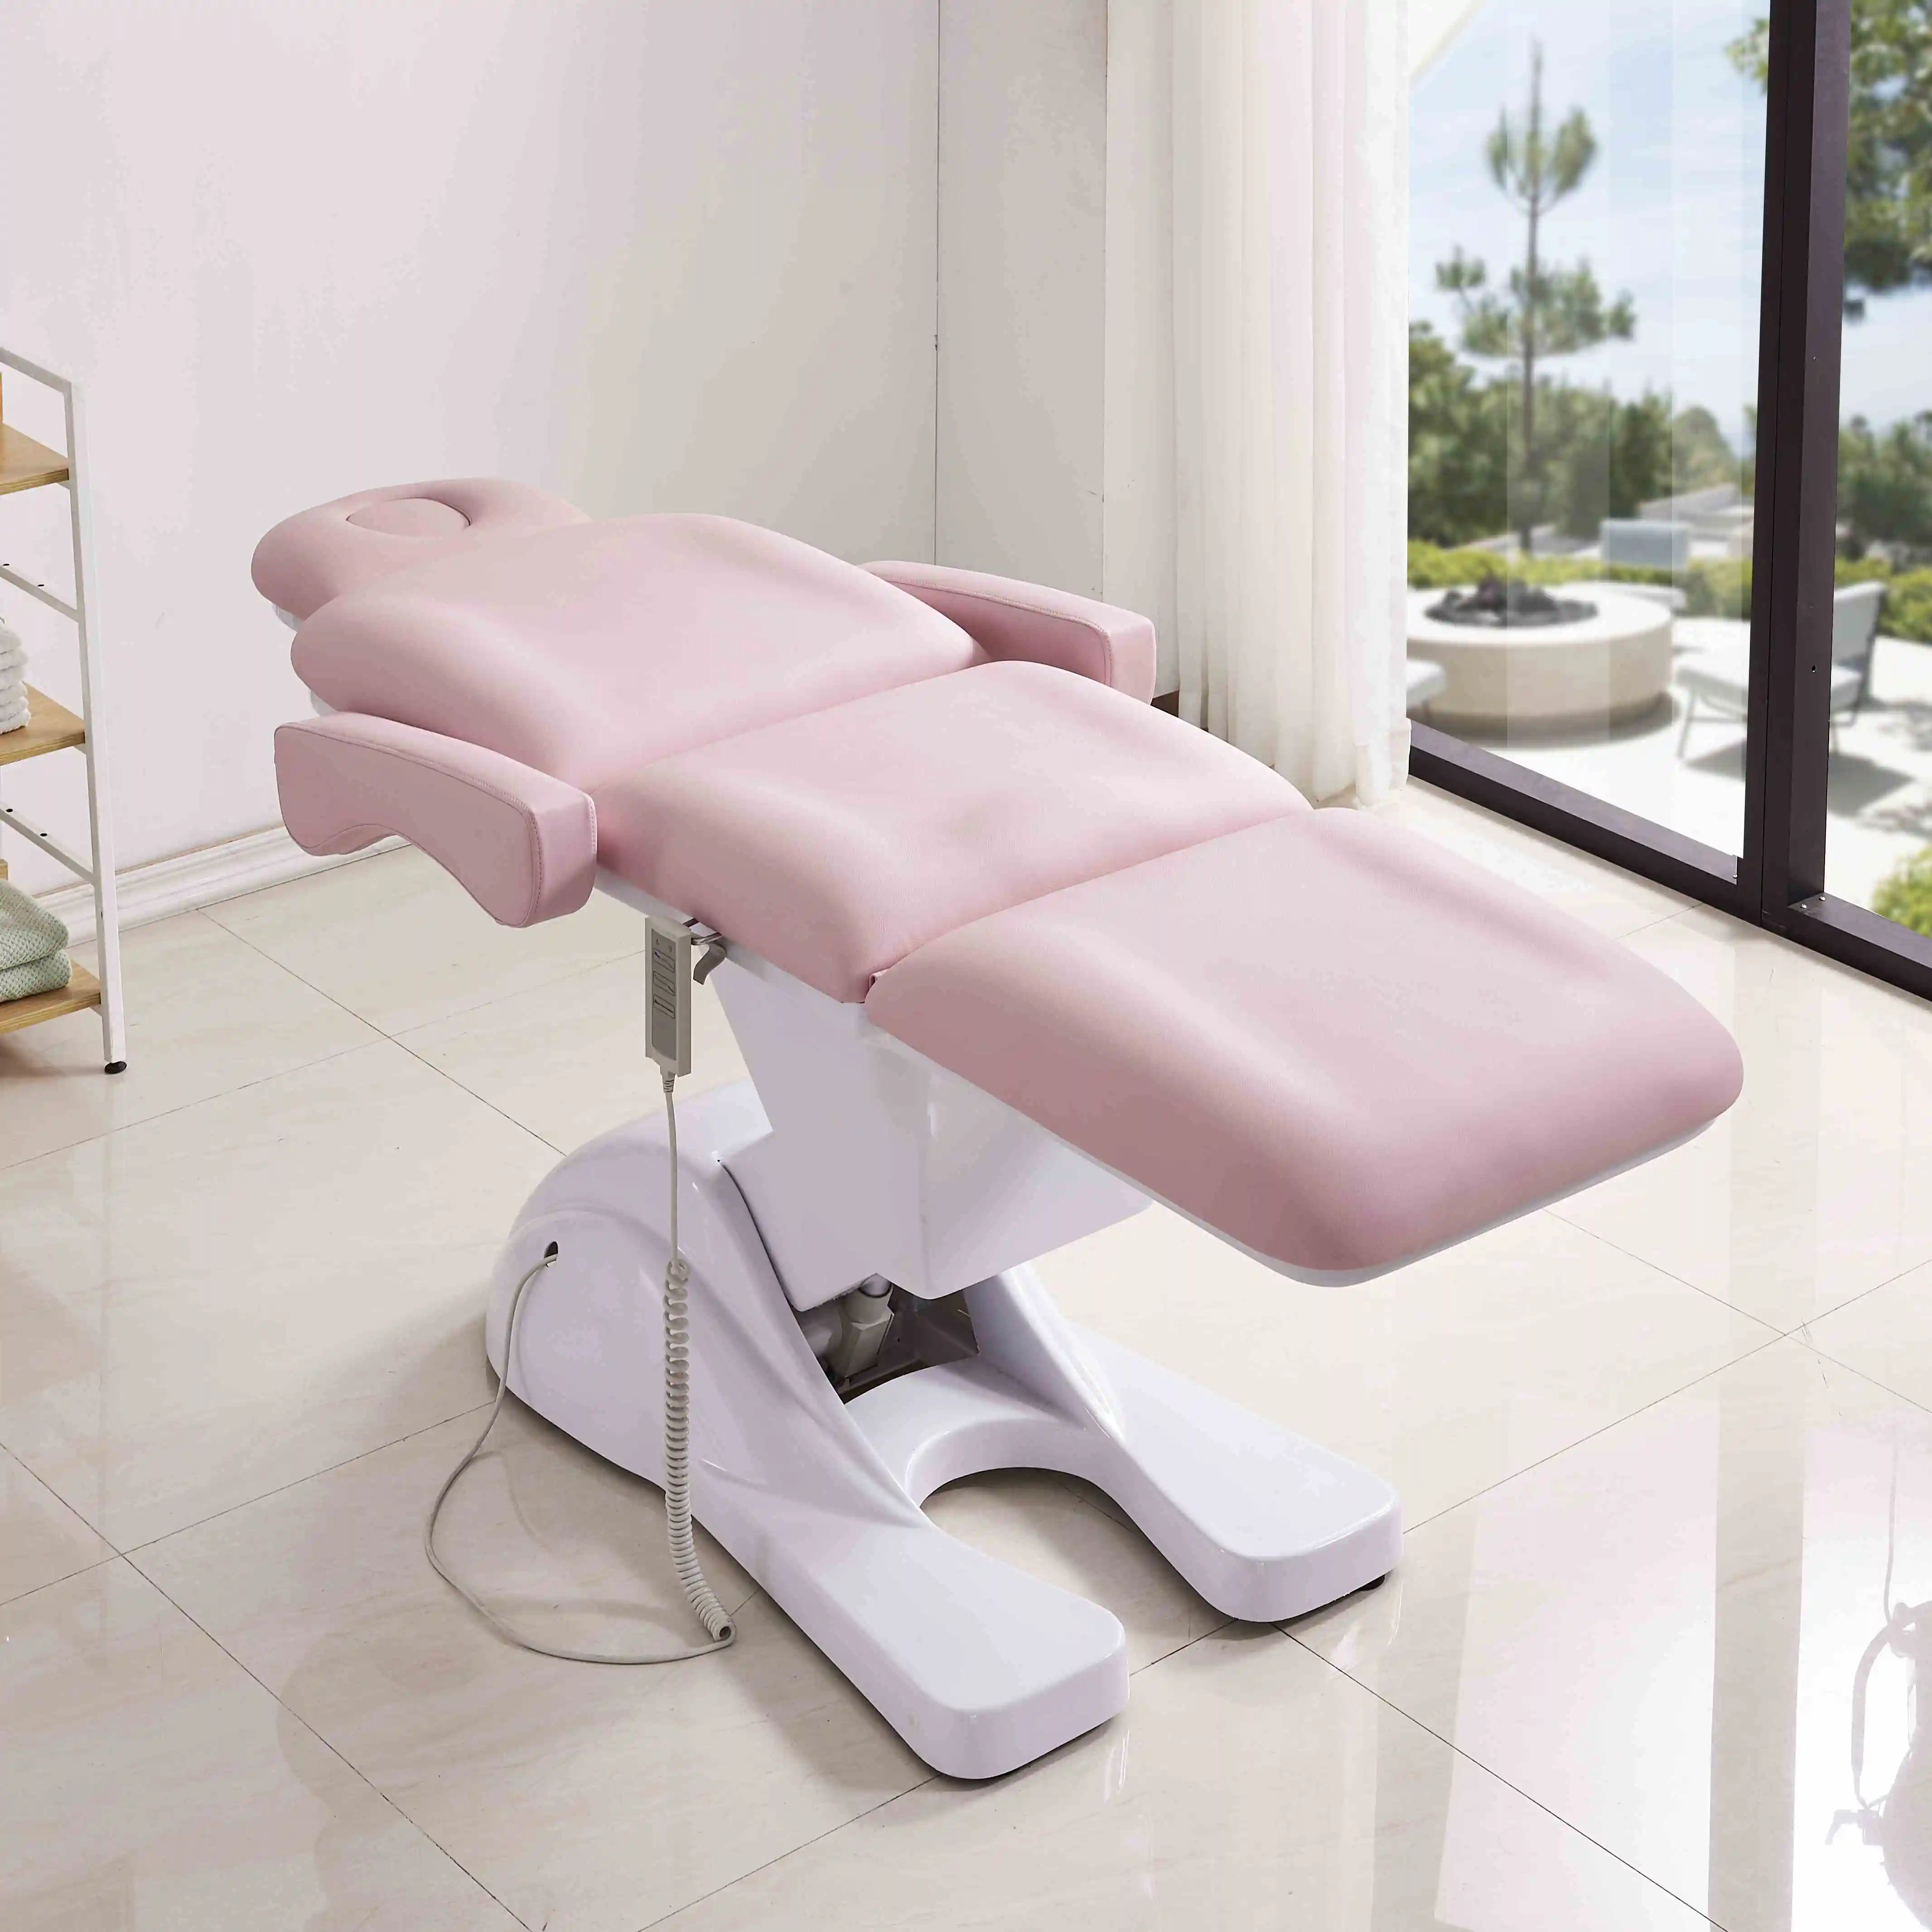 Lit de beauté de salon lit cosmétique de beauté de luxe pour le visage rose équipement de salon de coiffure chaise de meubles de beauté canapé meubles pour salon